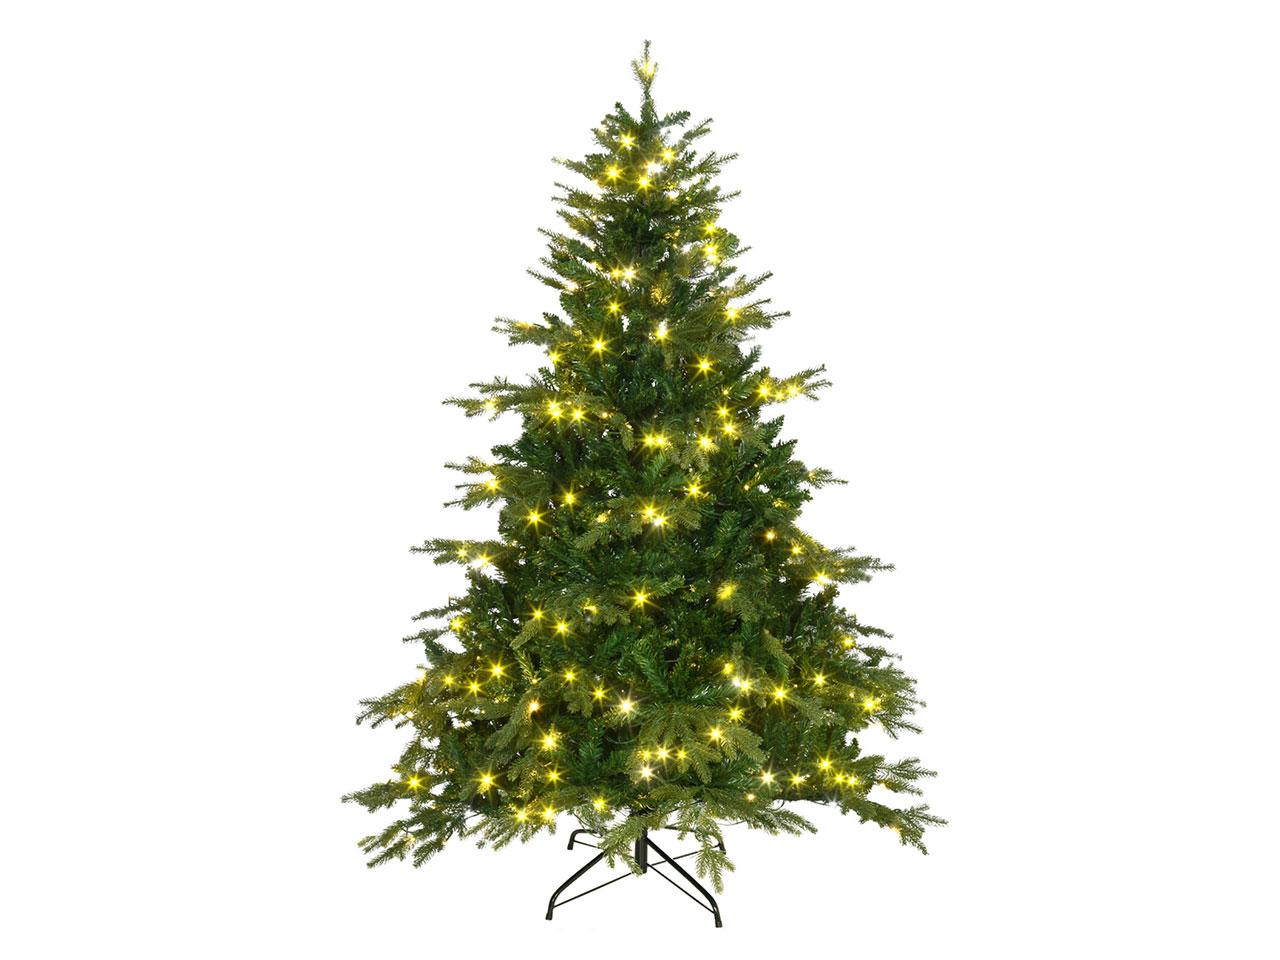 Umělý vánoční stromek 830-557V90GN, s řetězem LED světel, nehořlavý plast, 1,80 m